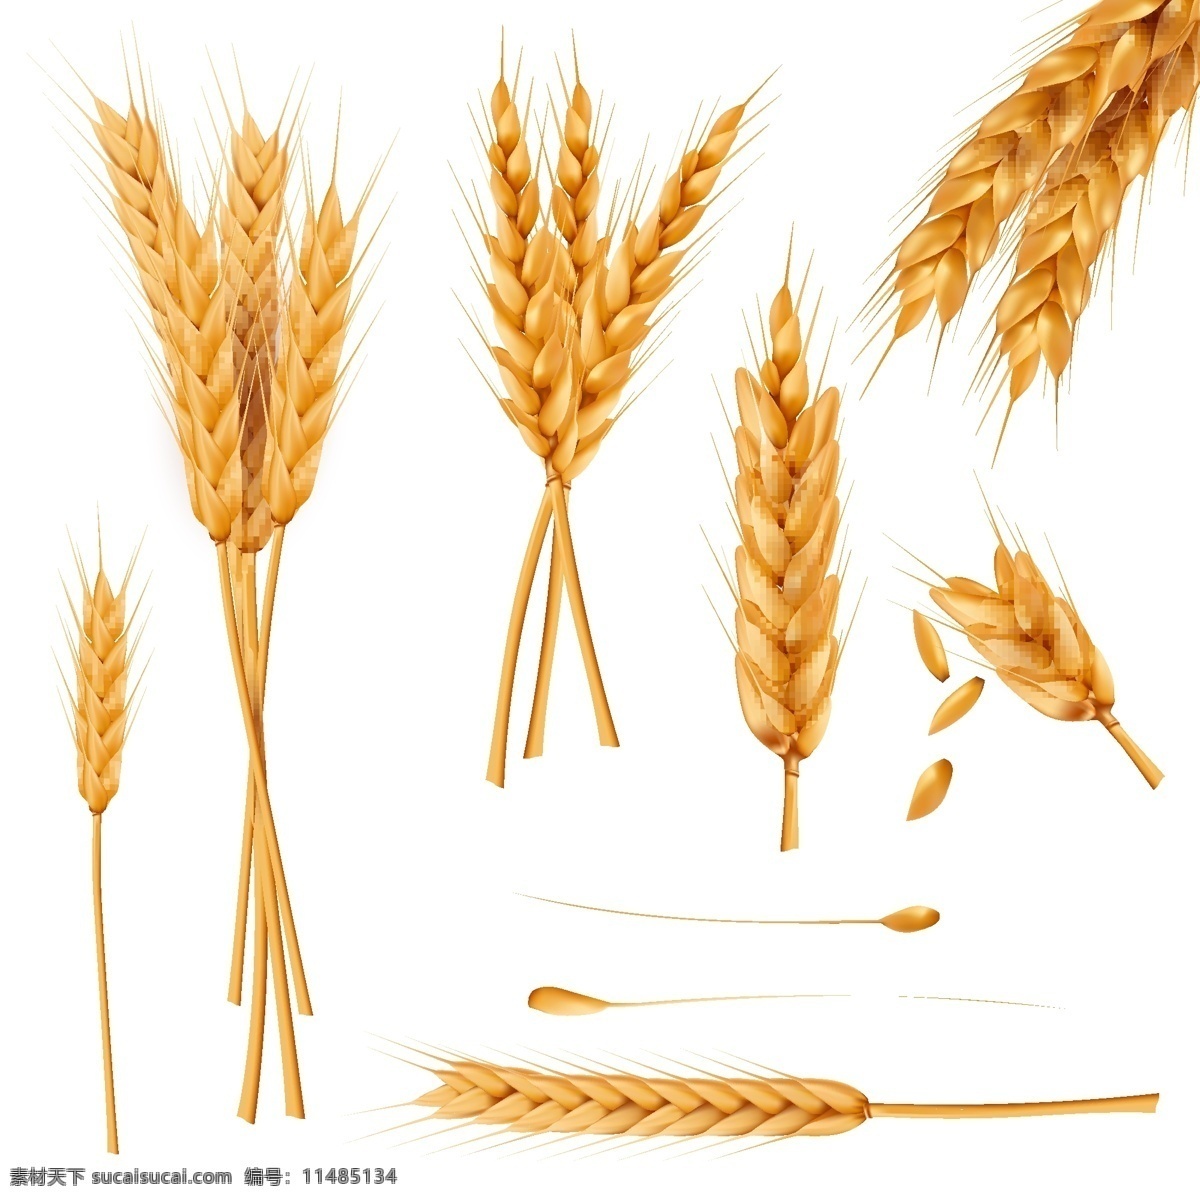 束 小 麦穗 干 全麦 现实 向量 图集 一束小麦 穗干 矢量图集 底纹边框 花边花纹